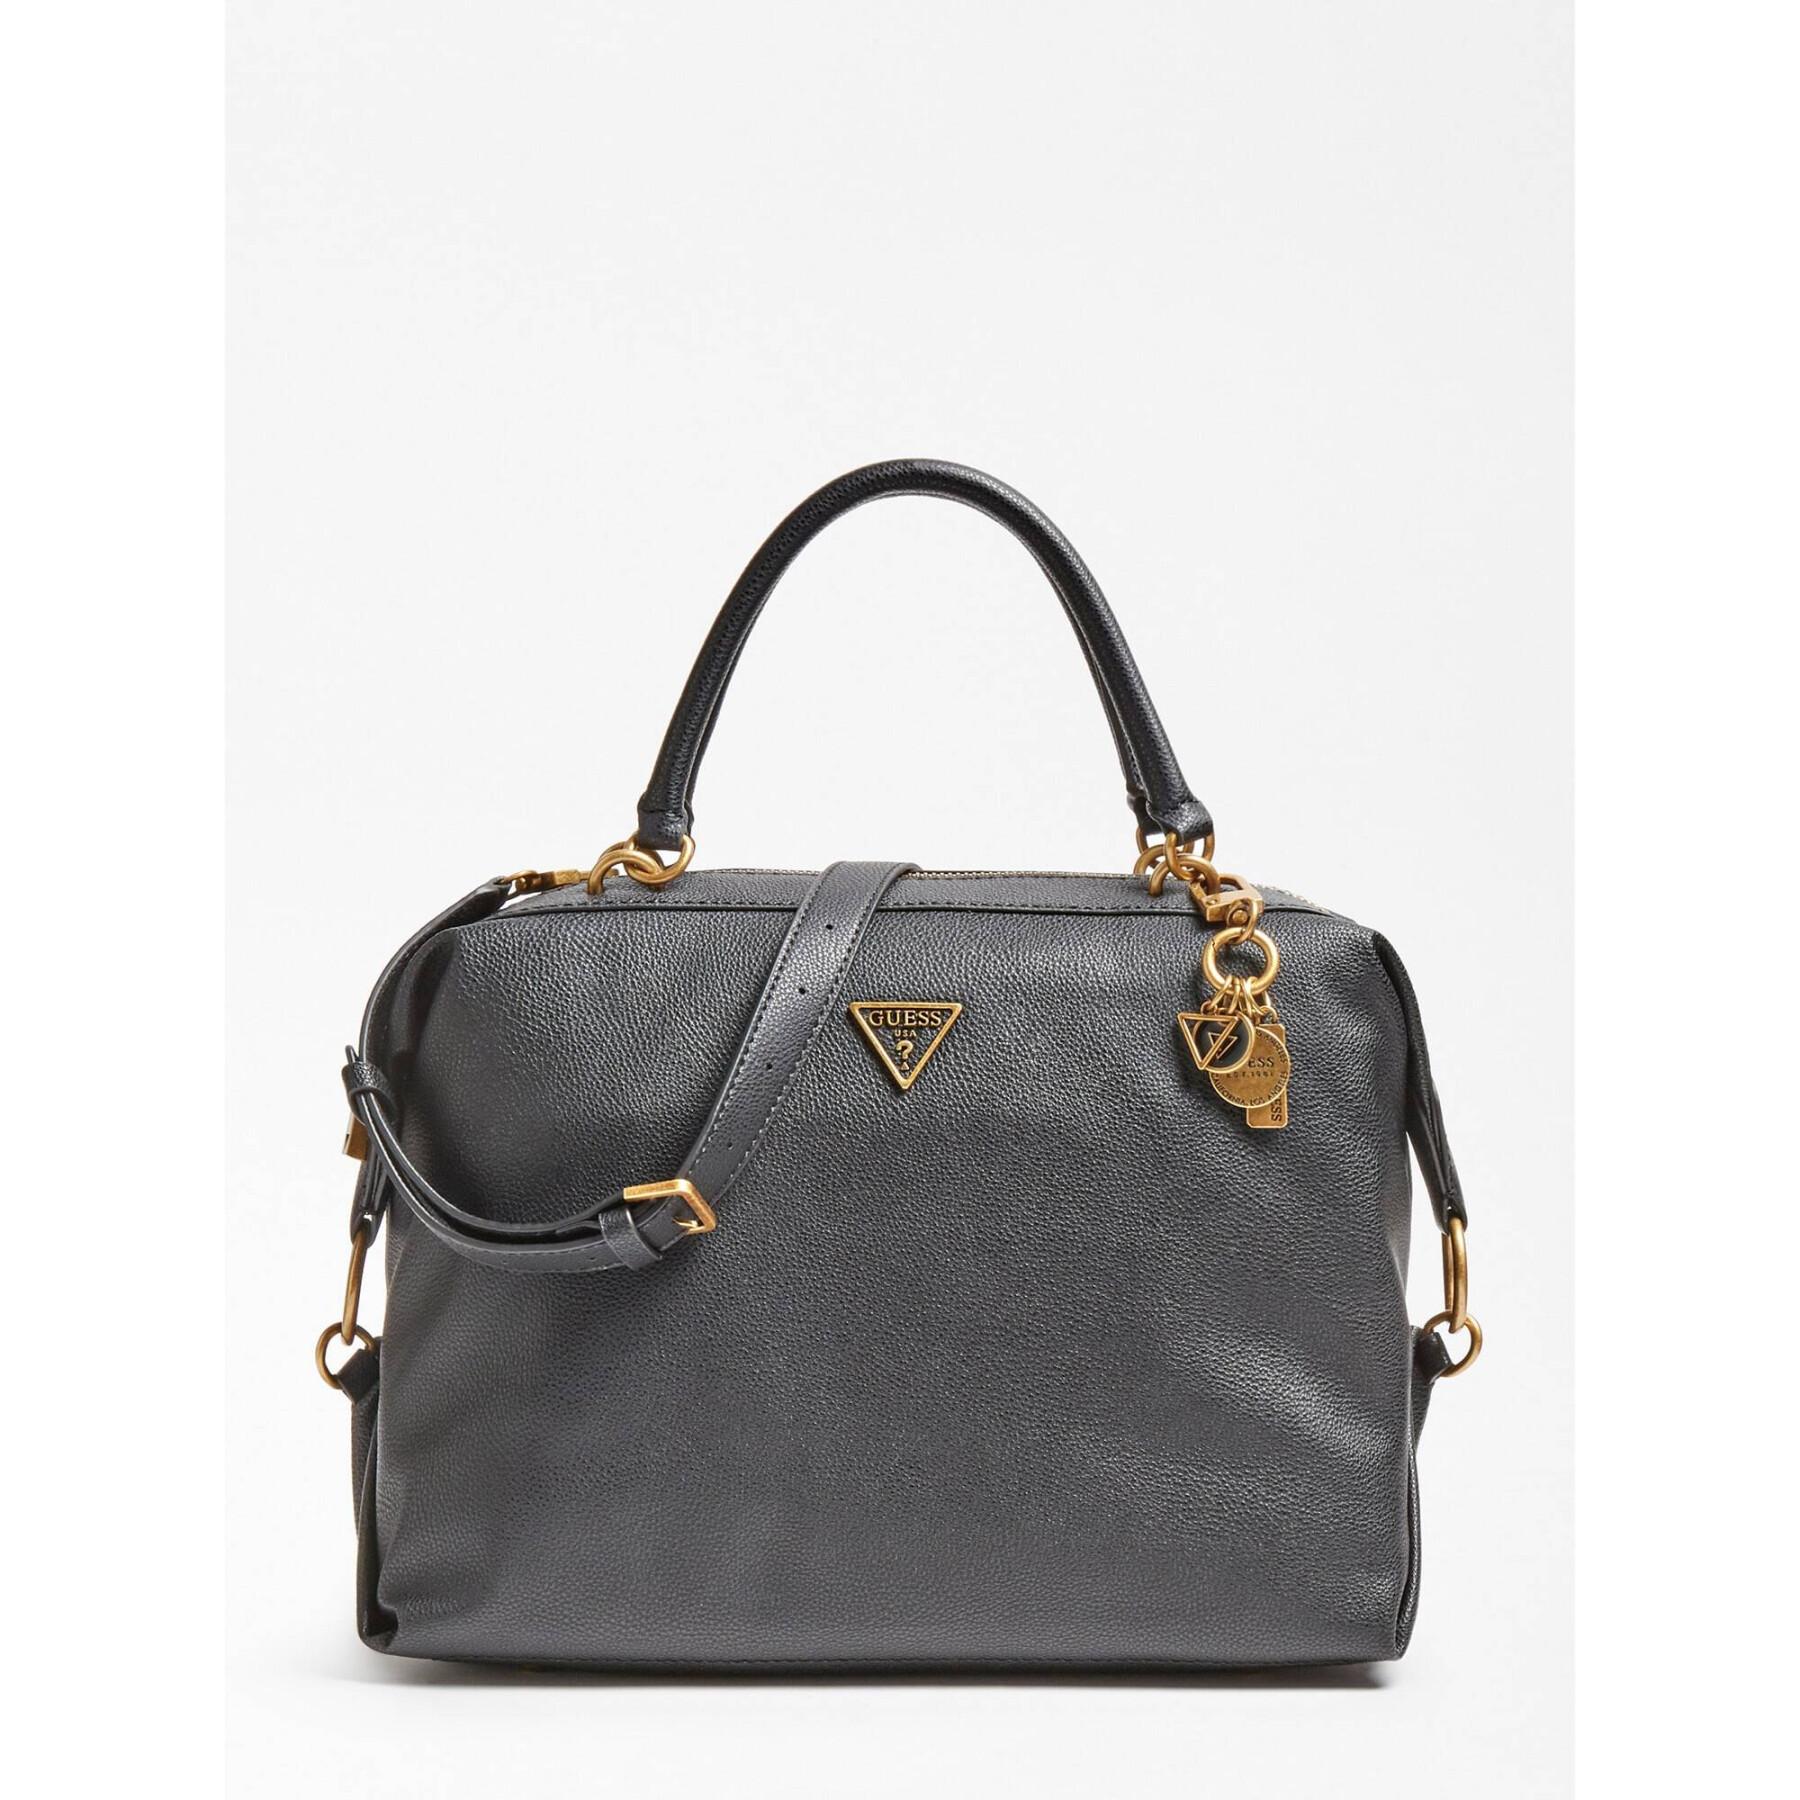 Women's satchel handbag Guess Destiny